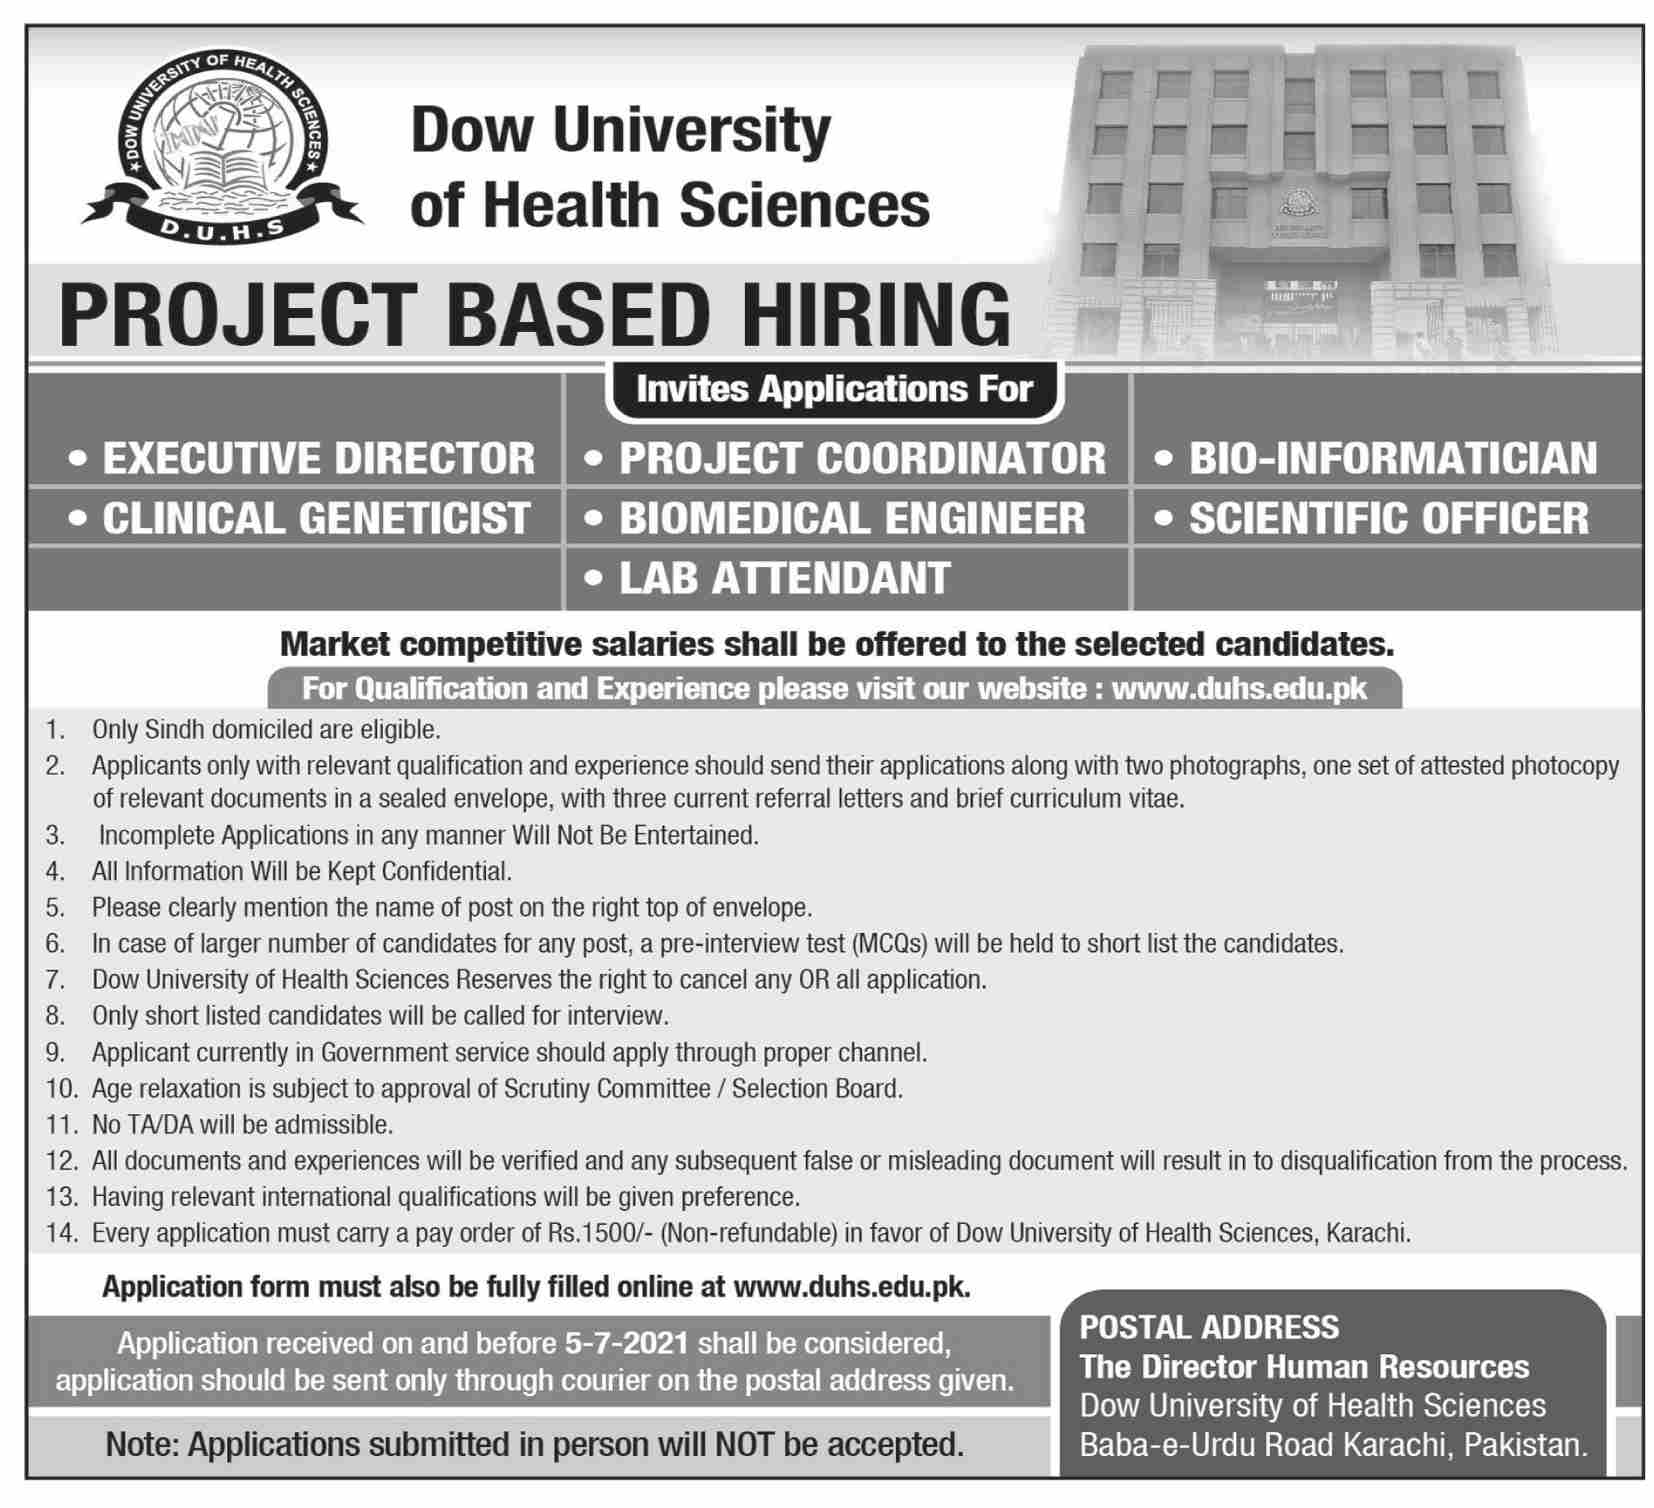 Project Coordinator Jobs in Dow University of Health Sciences in karachi